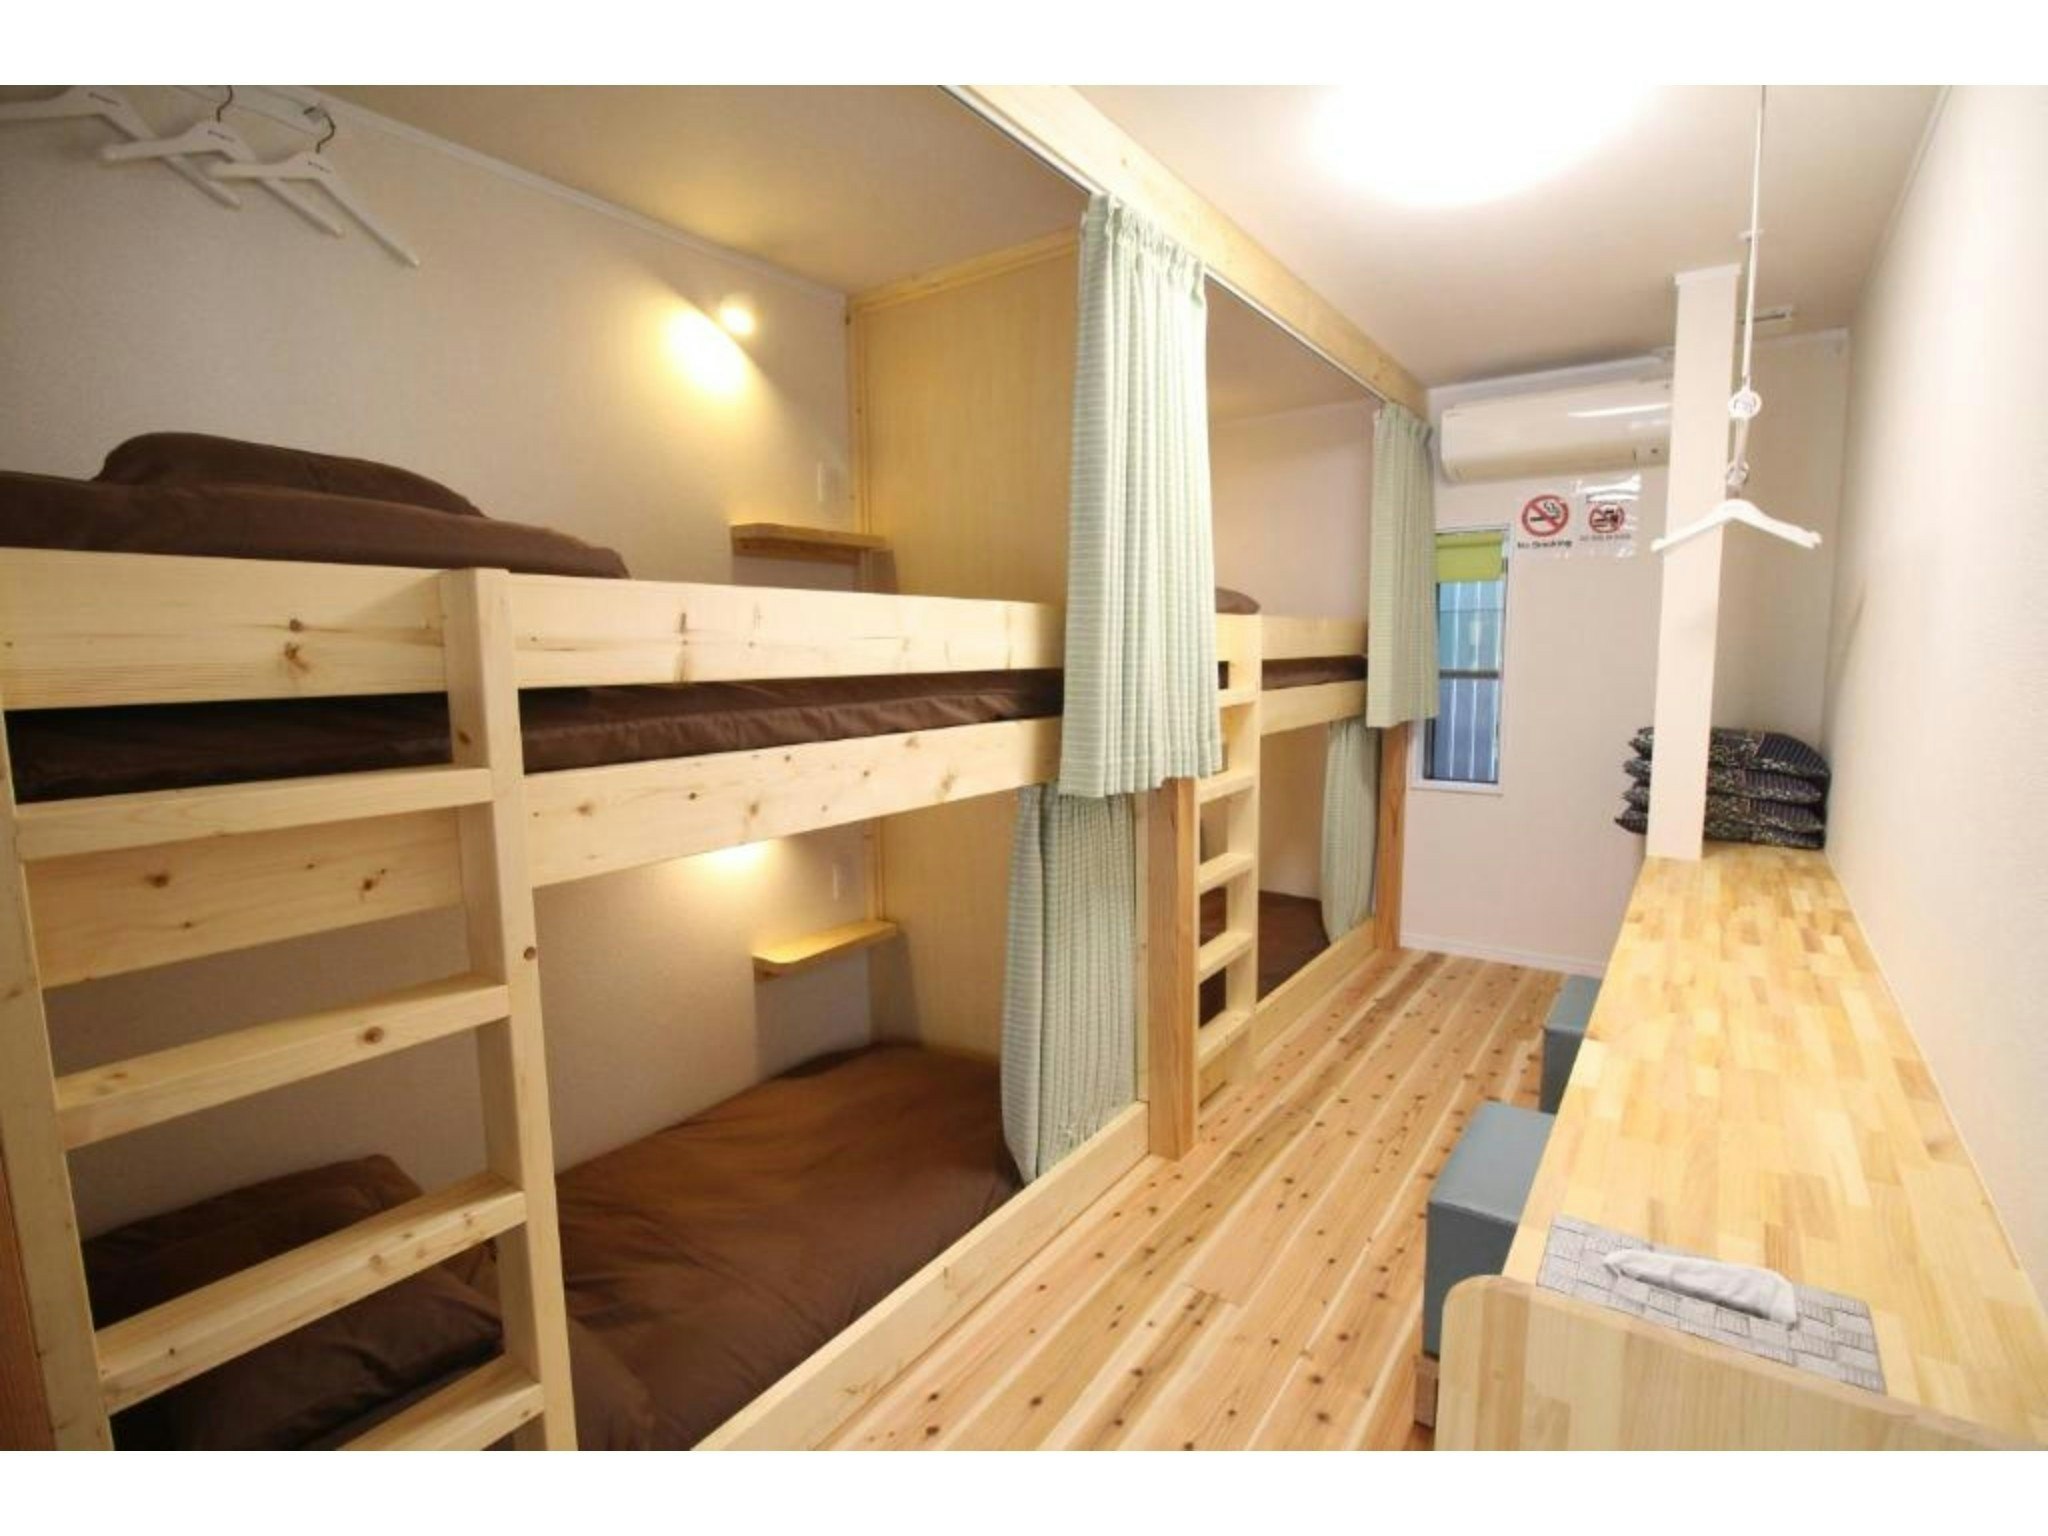 男性専用ドミトリールーム(相部屋)二段ベッドのベッド1名様分 4名様までご宿泊可能 共用シャワー